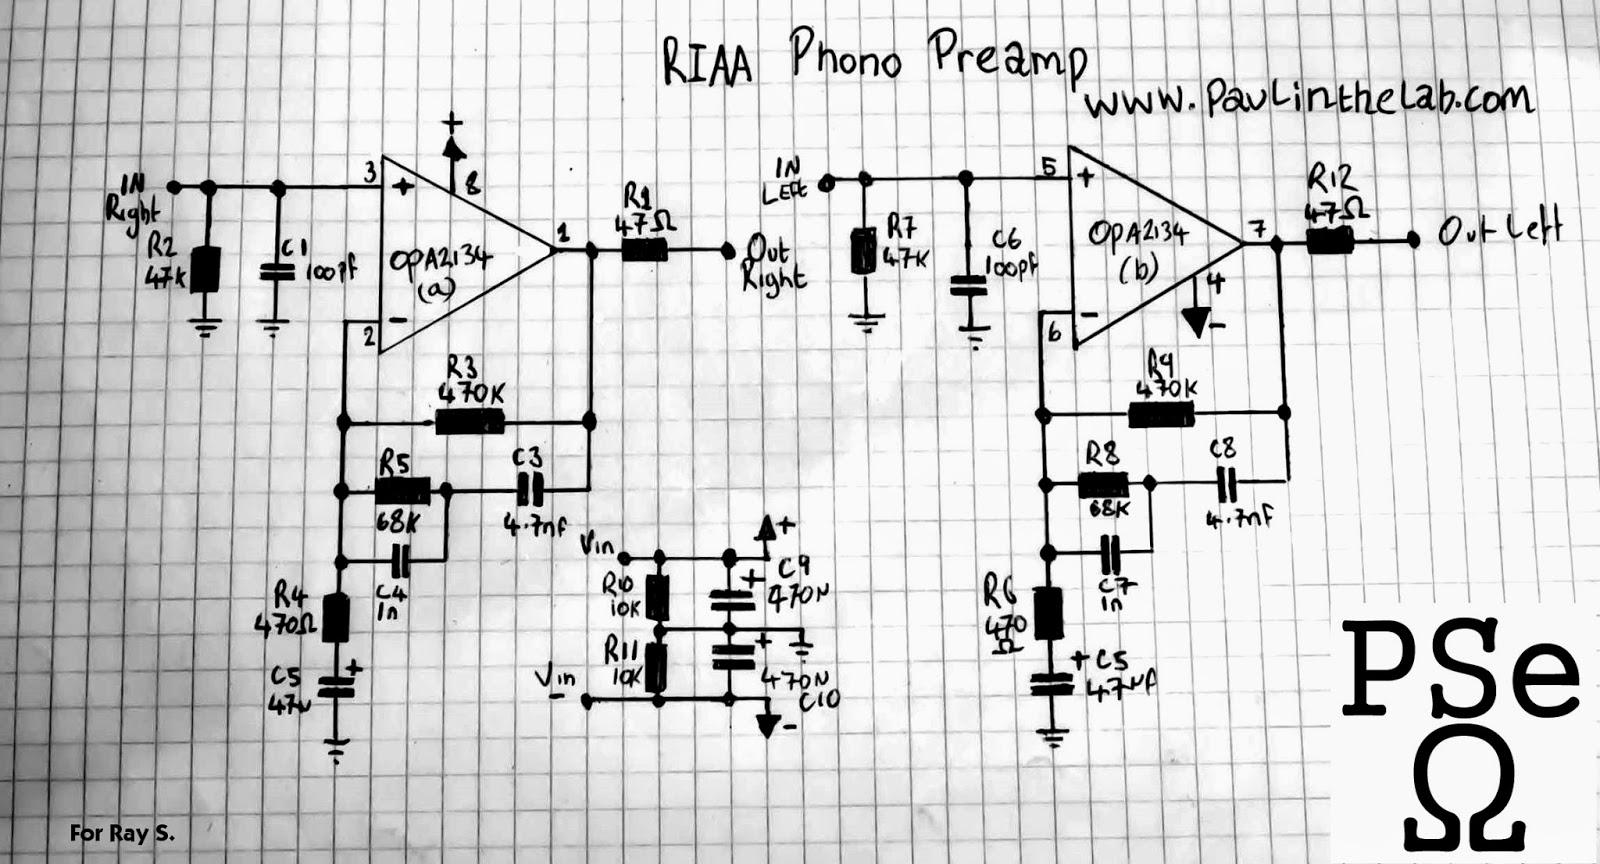 Riaa Phono Preamp Schematic